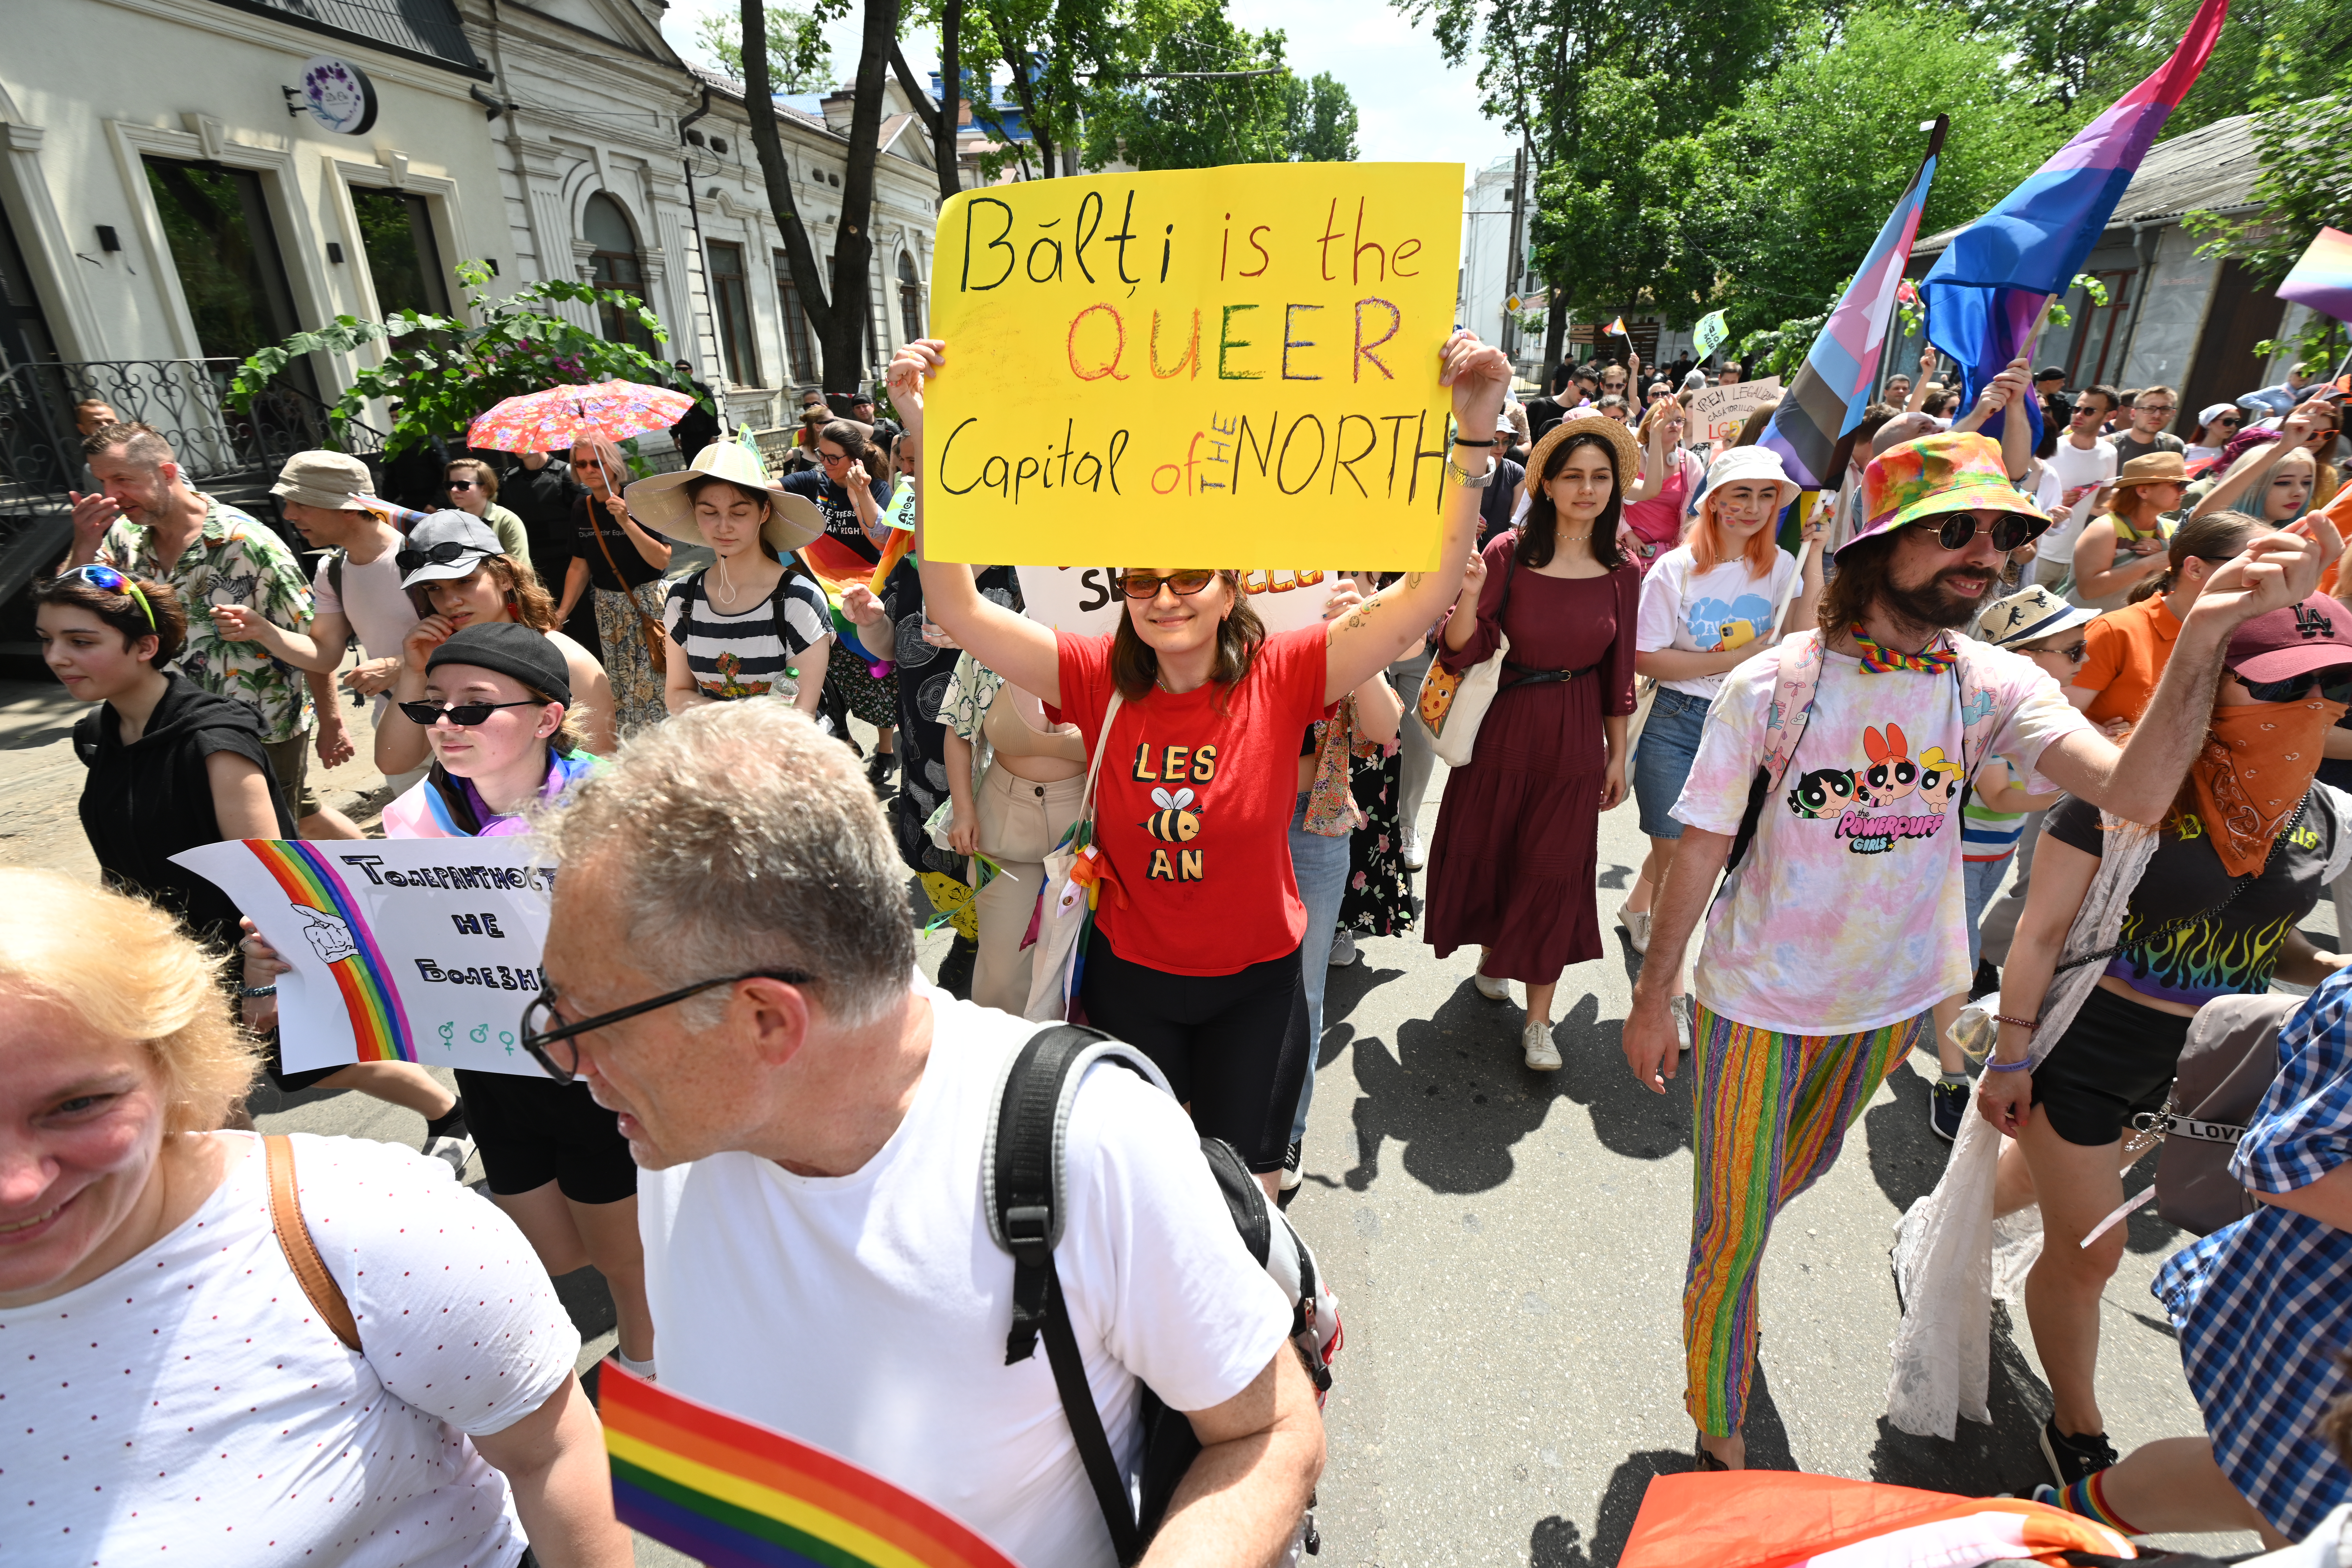 В Кишиневе прошел крупнейший ЛГБТ-марш. И контракции. Как это было? Фоторепортаж NM